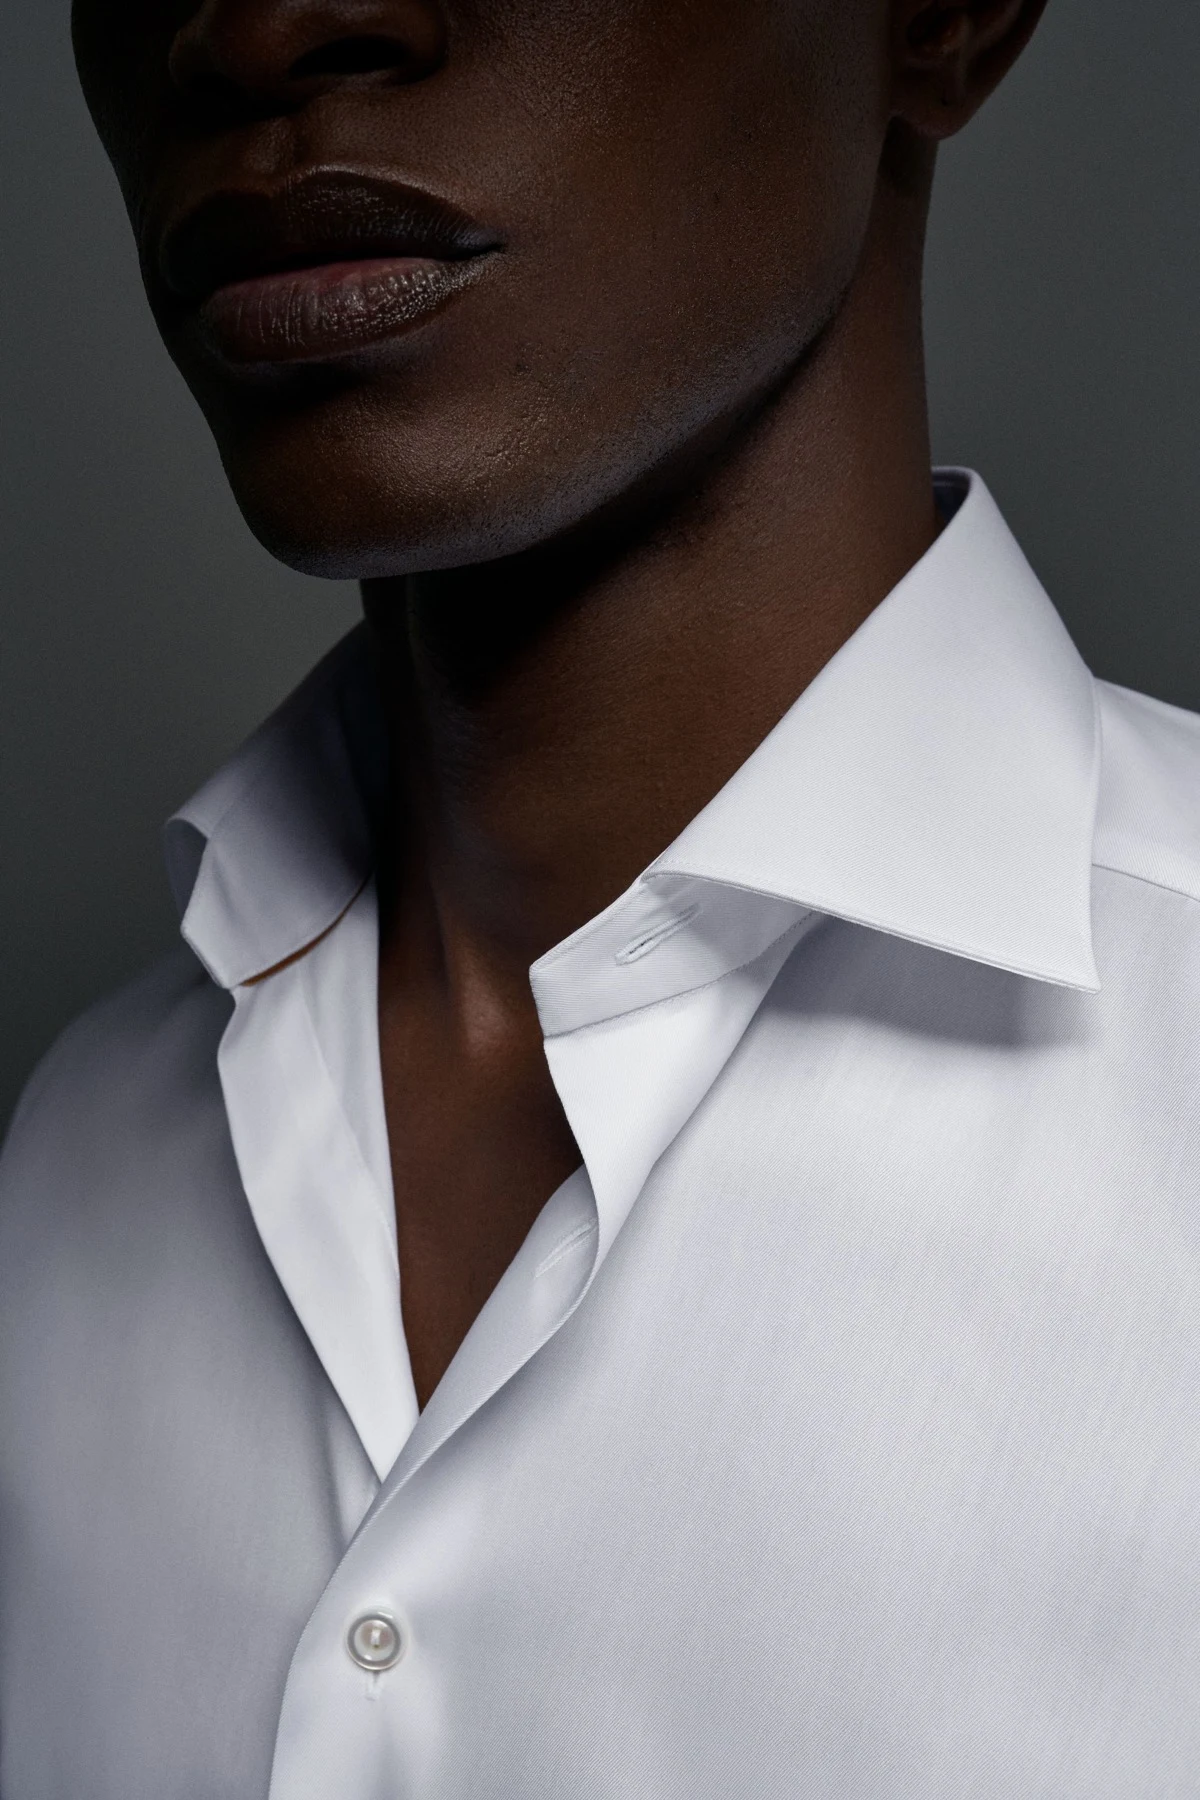 detail collar white shirt